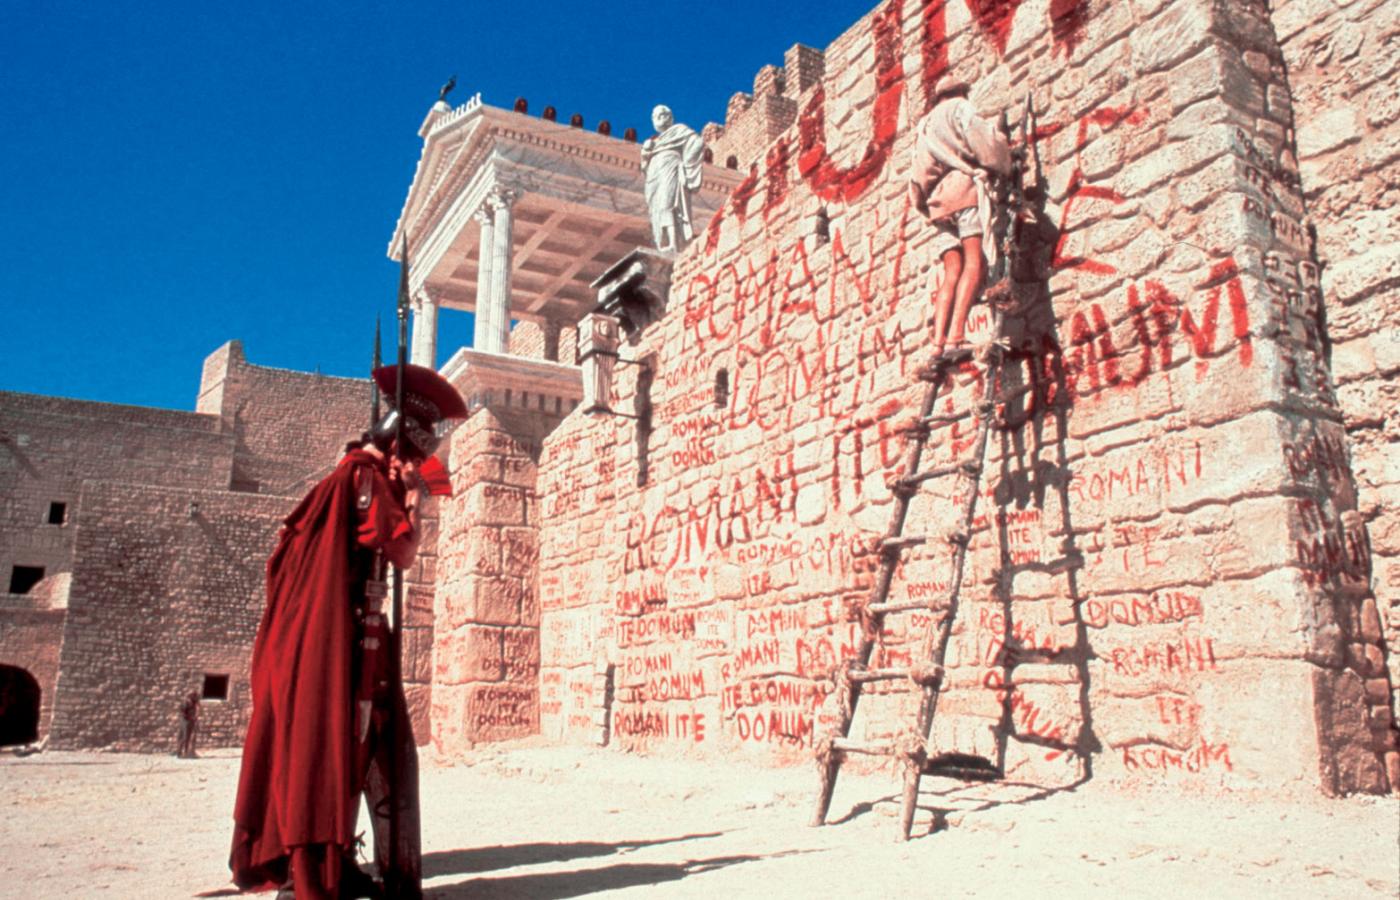 Gramatyka ważniejsza niż polityka? Gdy główny bohater „Żywotu Briana” Monty Pythona pisze nocą na murze świątyni w Jerozolimie „Romanes eunt domus”, chwyta go rzymski centurion i przepytuje, jak poprawnie brzmi hasło „Rzymianie idźcie do domu”, po czym, jak na belfra przystało, każe mu napisać „Romani ite domum” sto razy.